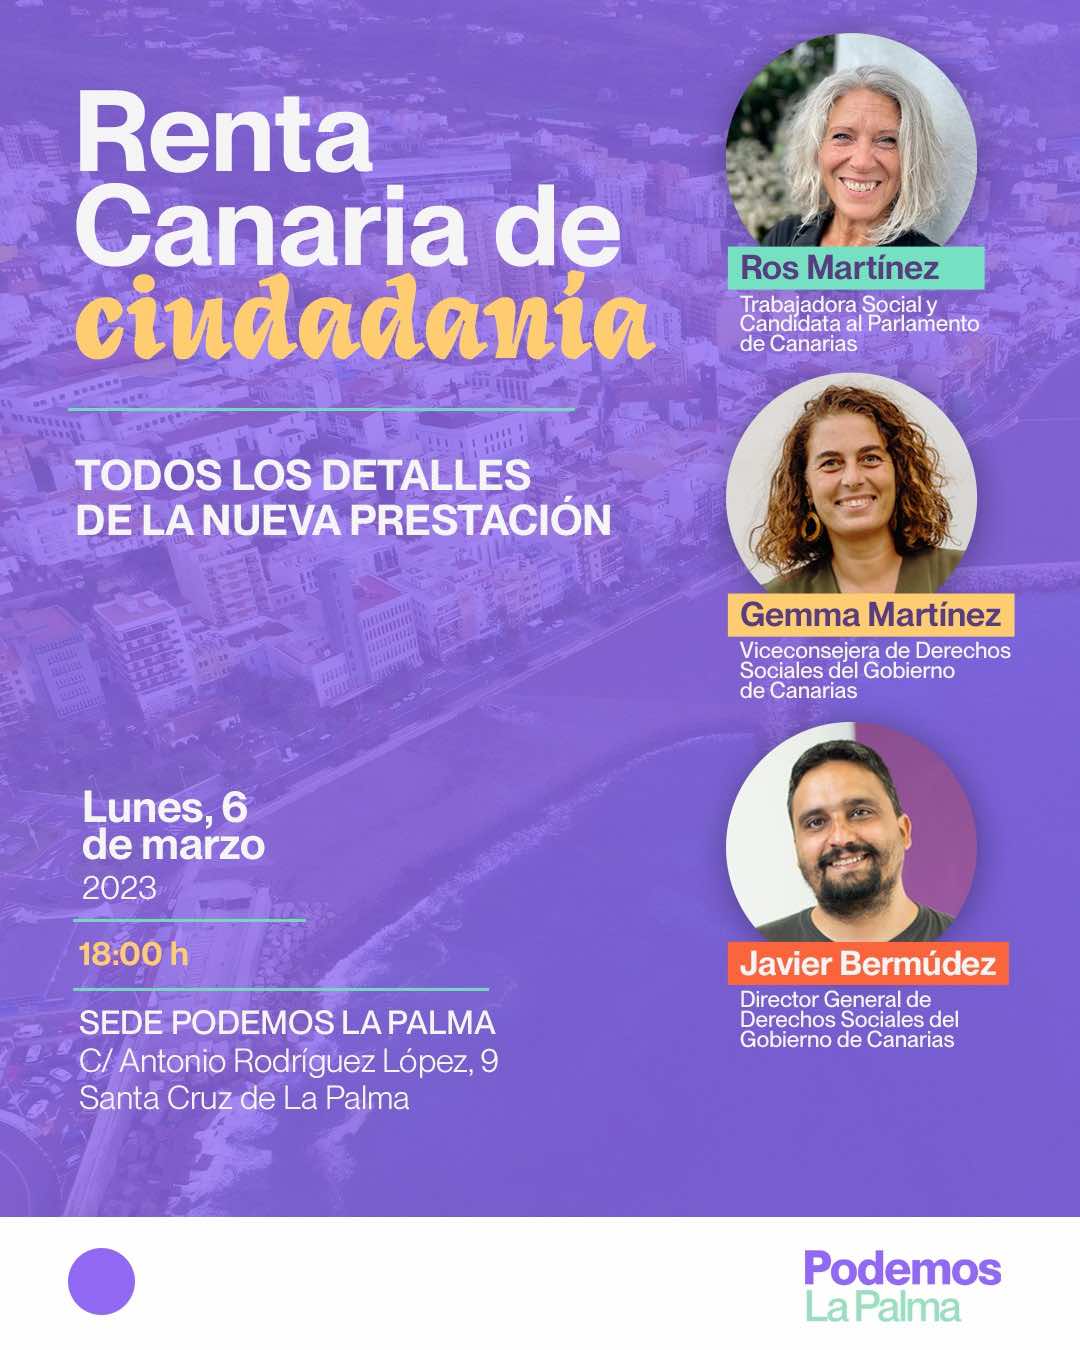 Podemos La Palma organiza una charla informativa sobre la Renta Canaria de Ciudadanía